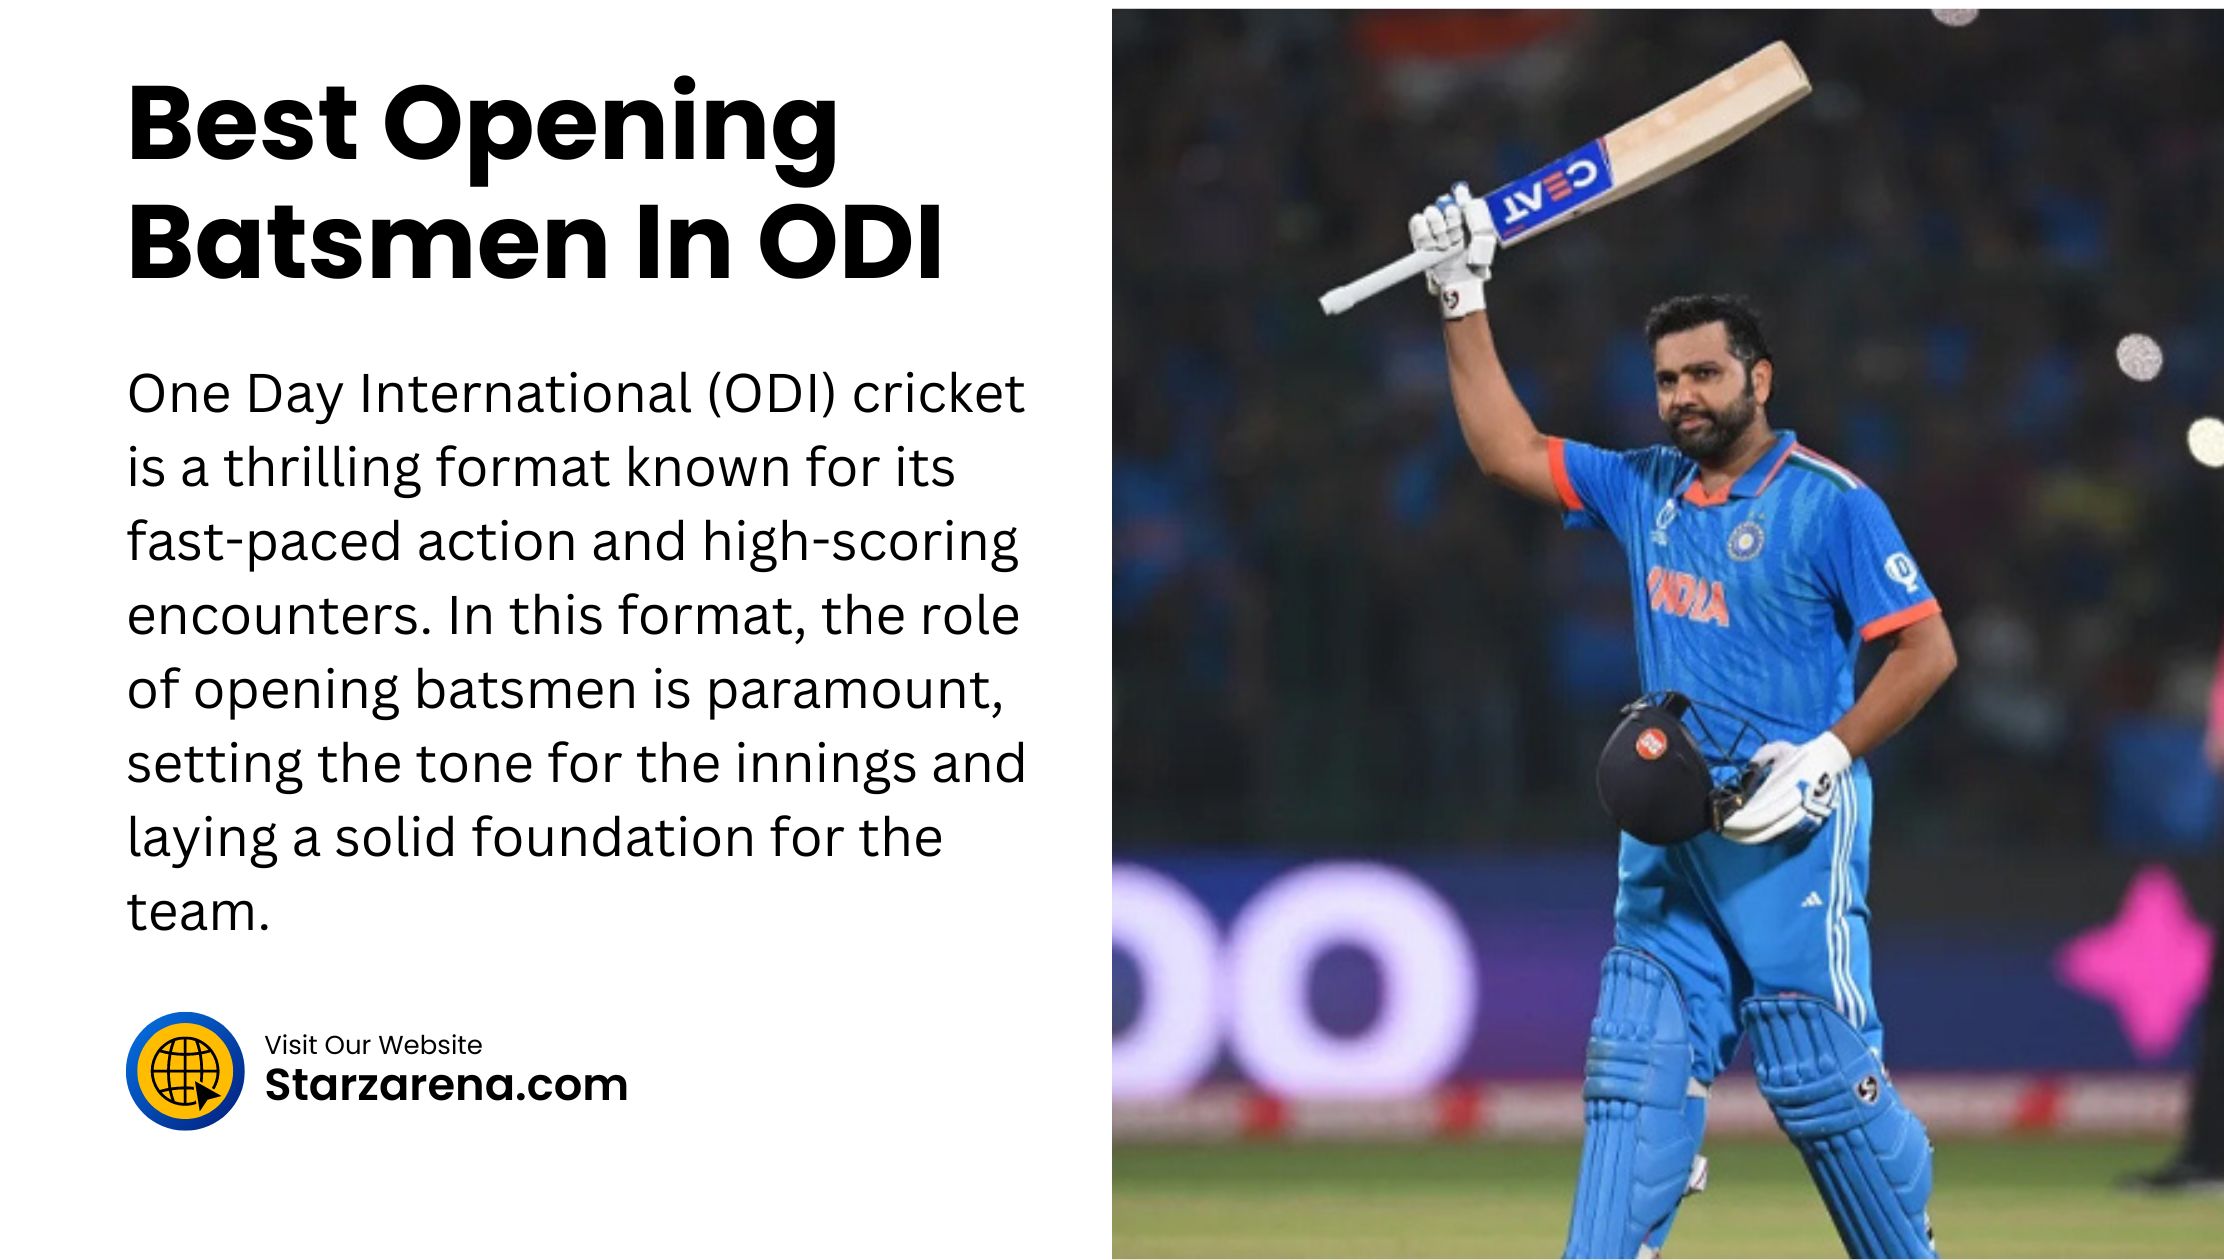 Best Opening Batsmen In ODI